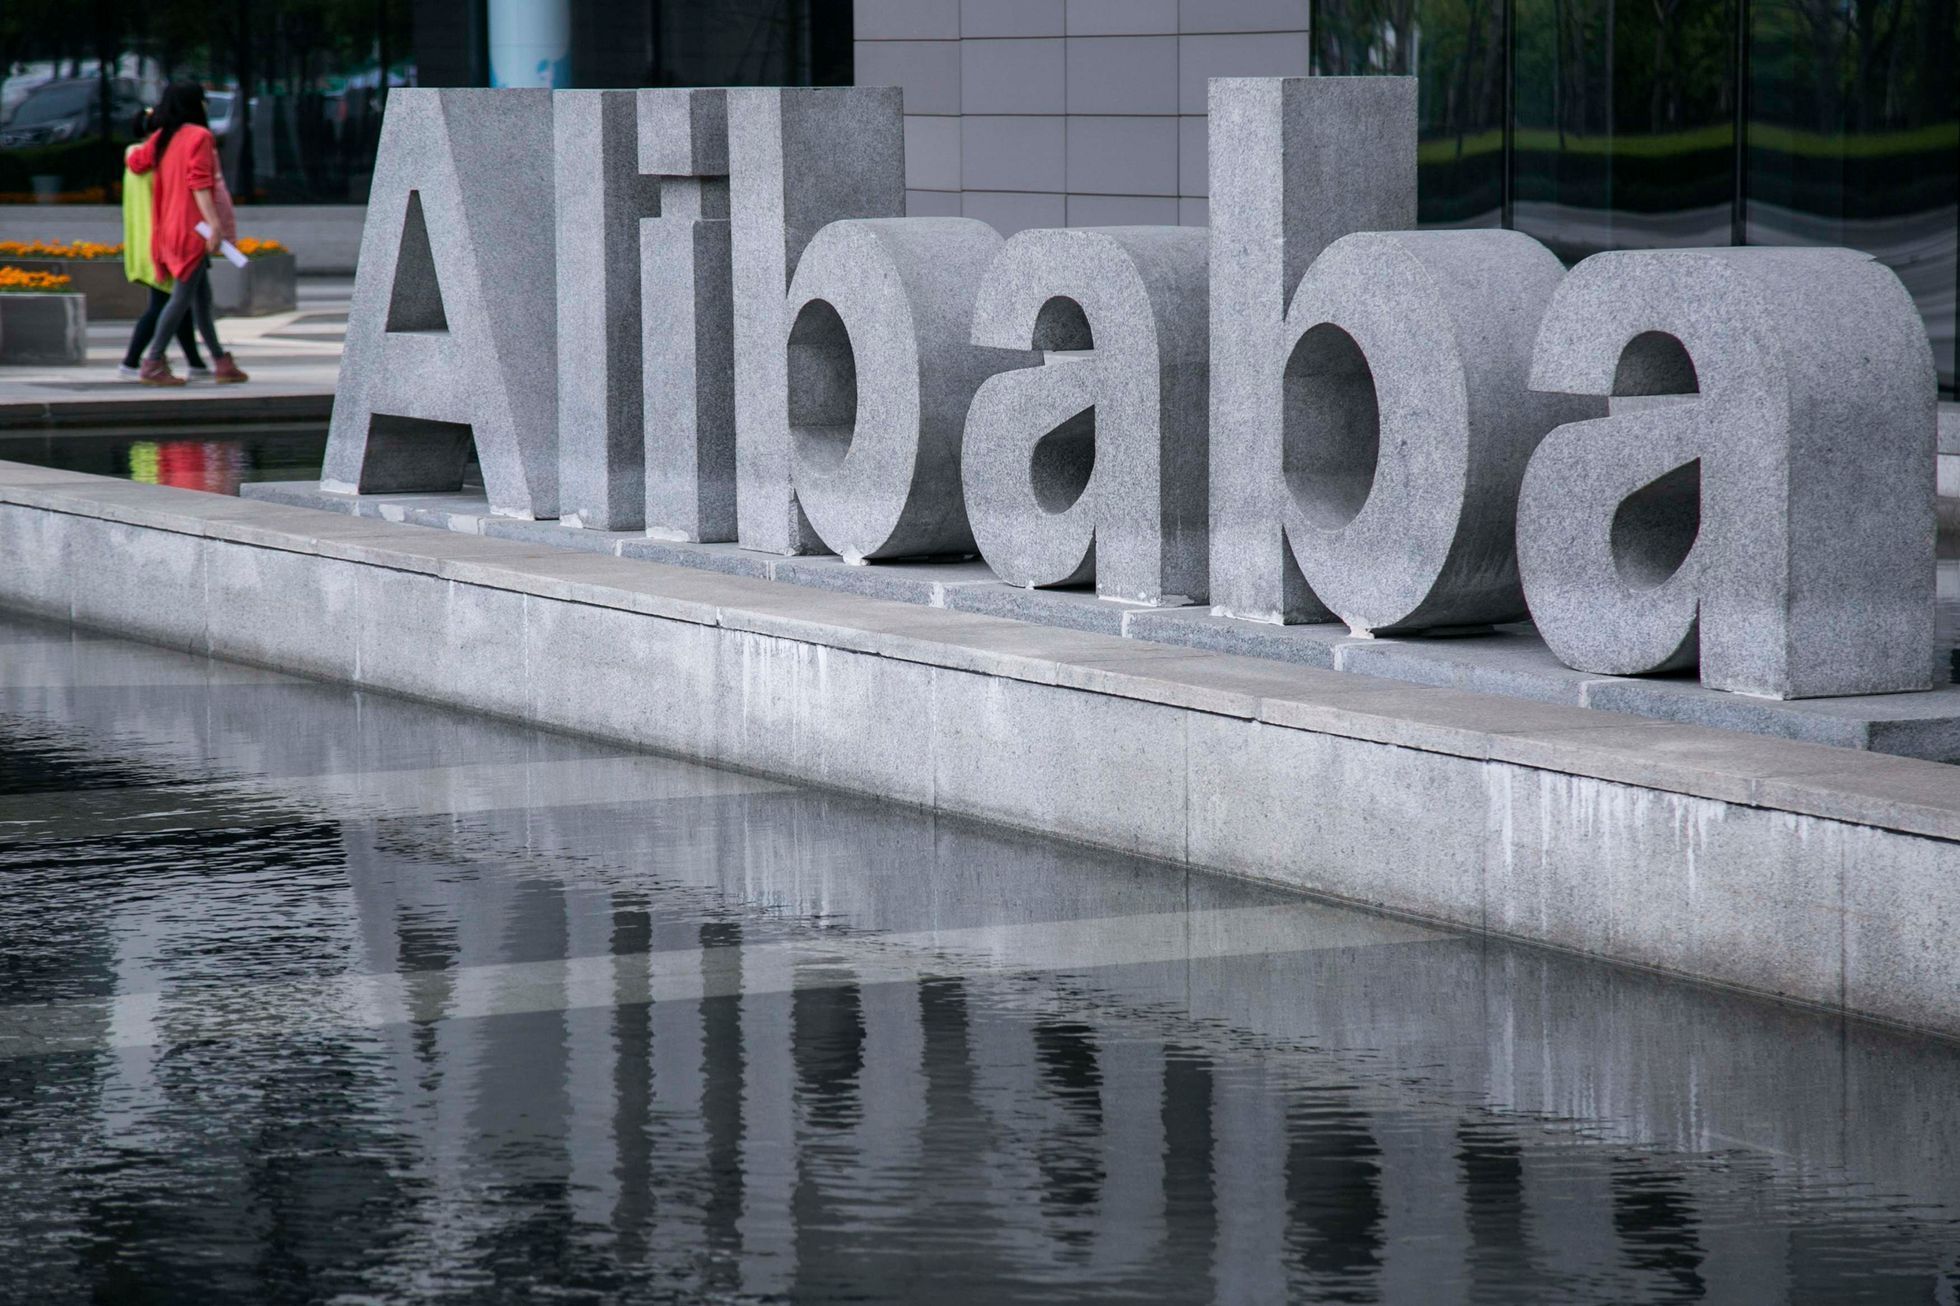 alibaba